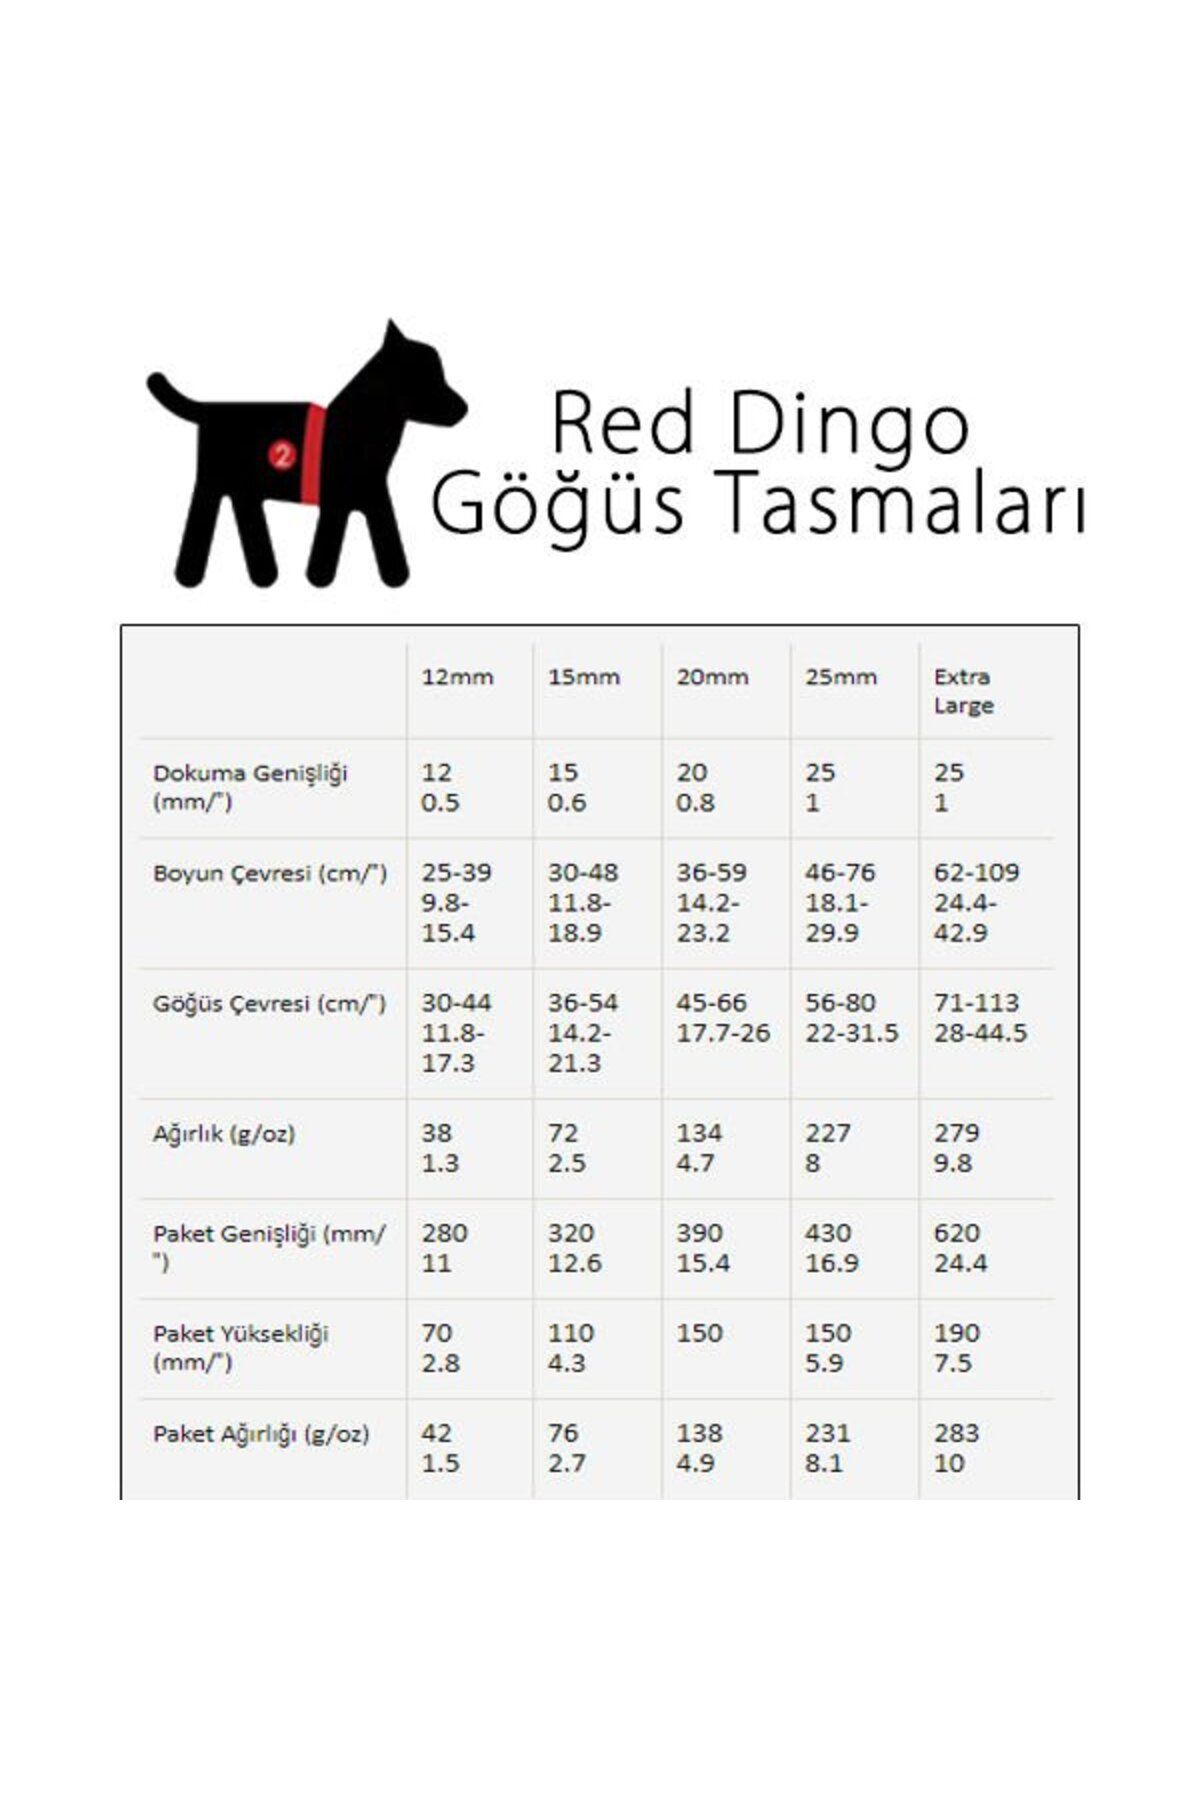 RedDingo Red Dingo Stars Hot Kırmızı Beyaz Yıldızlı Köpek Göğüs Tasması 25 Mm - DH-ST-RE-25